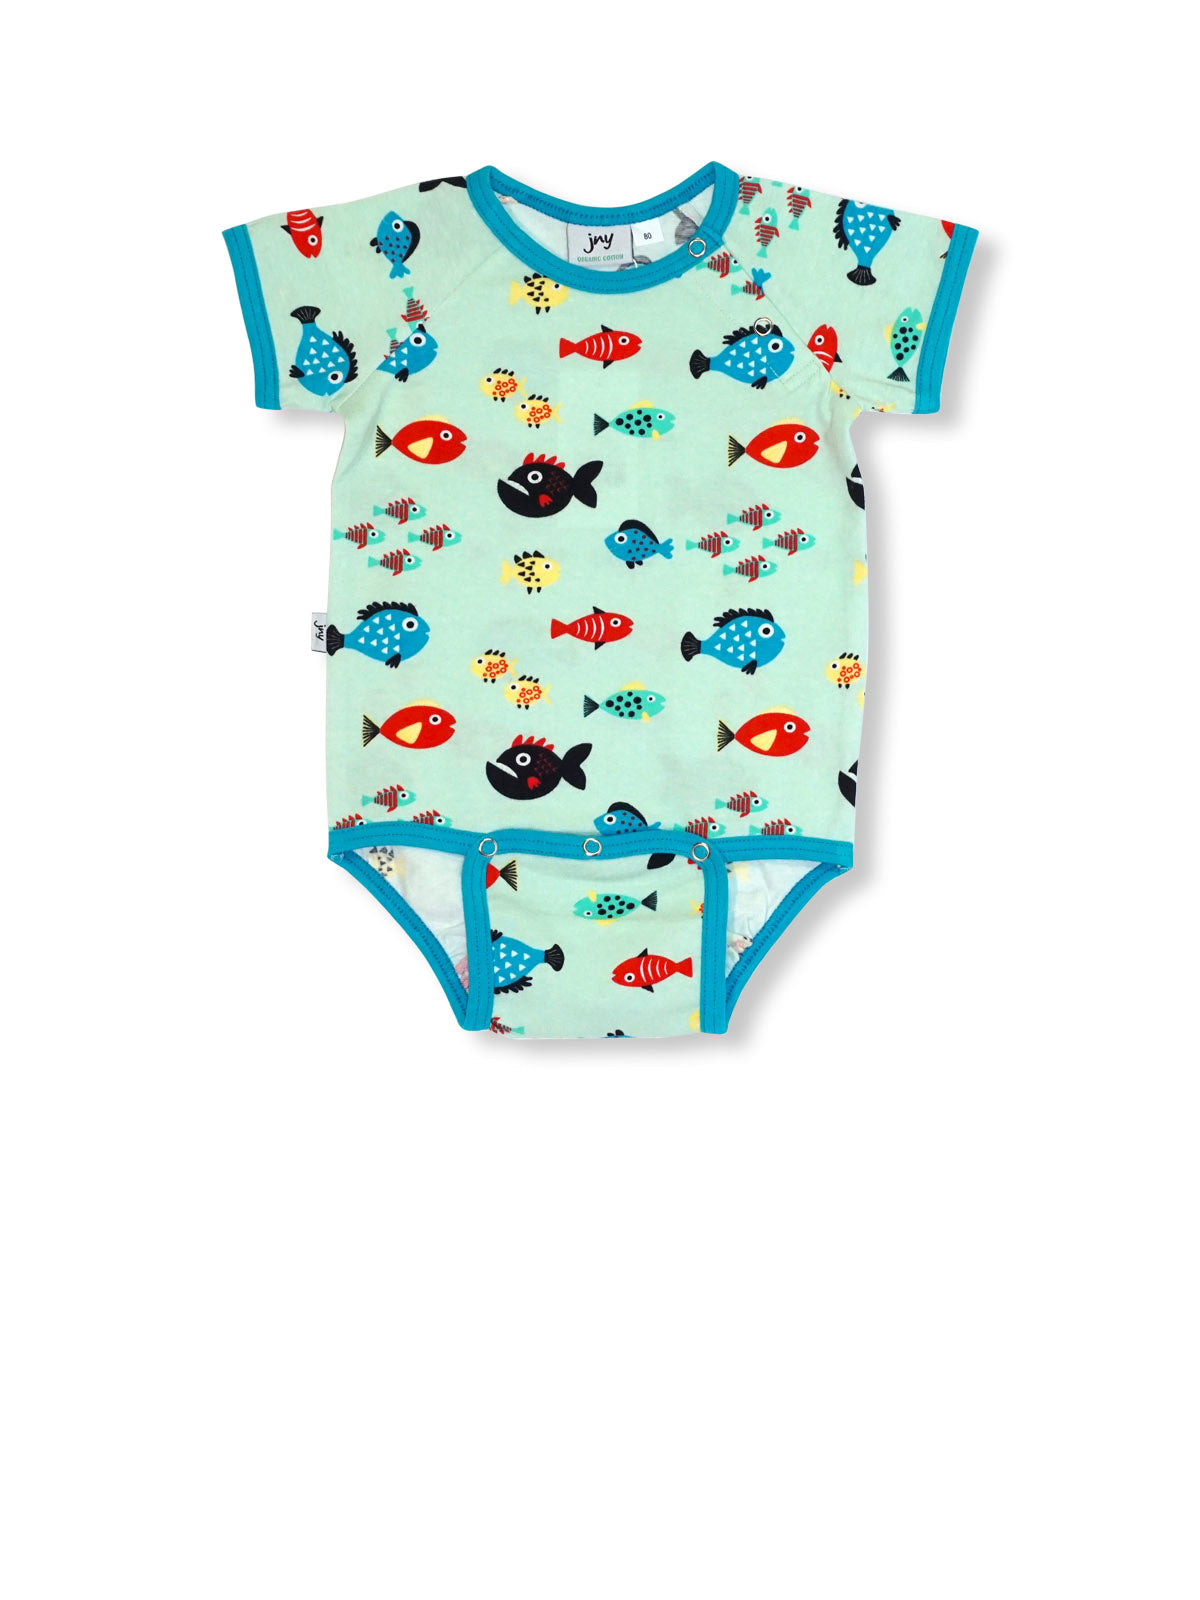 JNY - S/S Body Suit - Swimming Fish